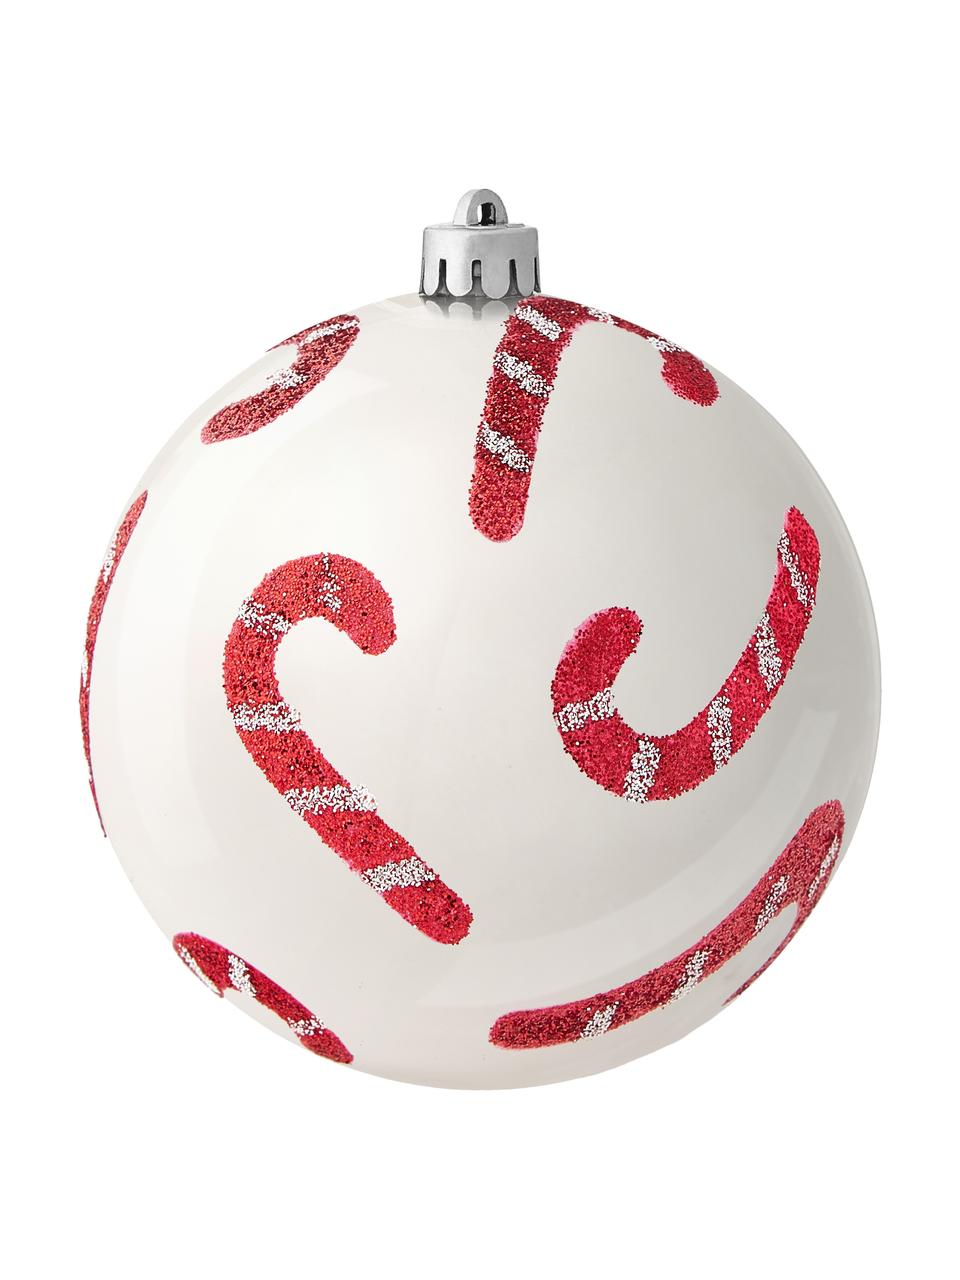 Nerozbitné vánoční ozdoby Candy, Ø 8 cm, 12 ks, Umělá hmota, Bílá, červená, Ø 8 cm